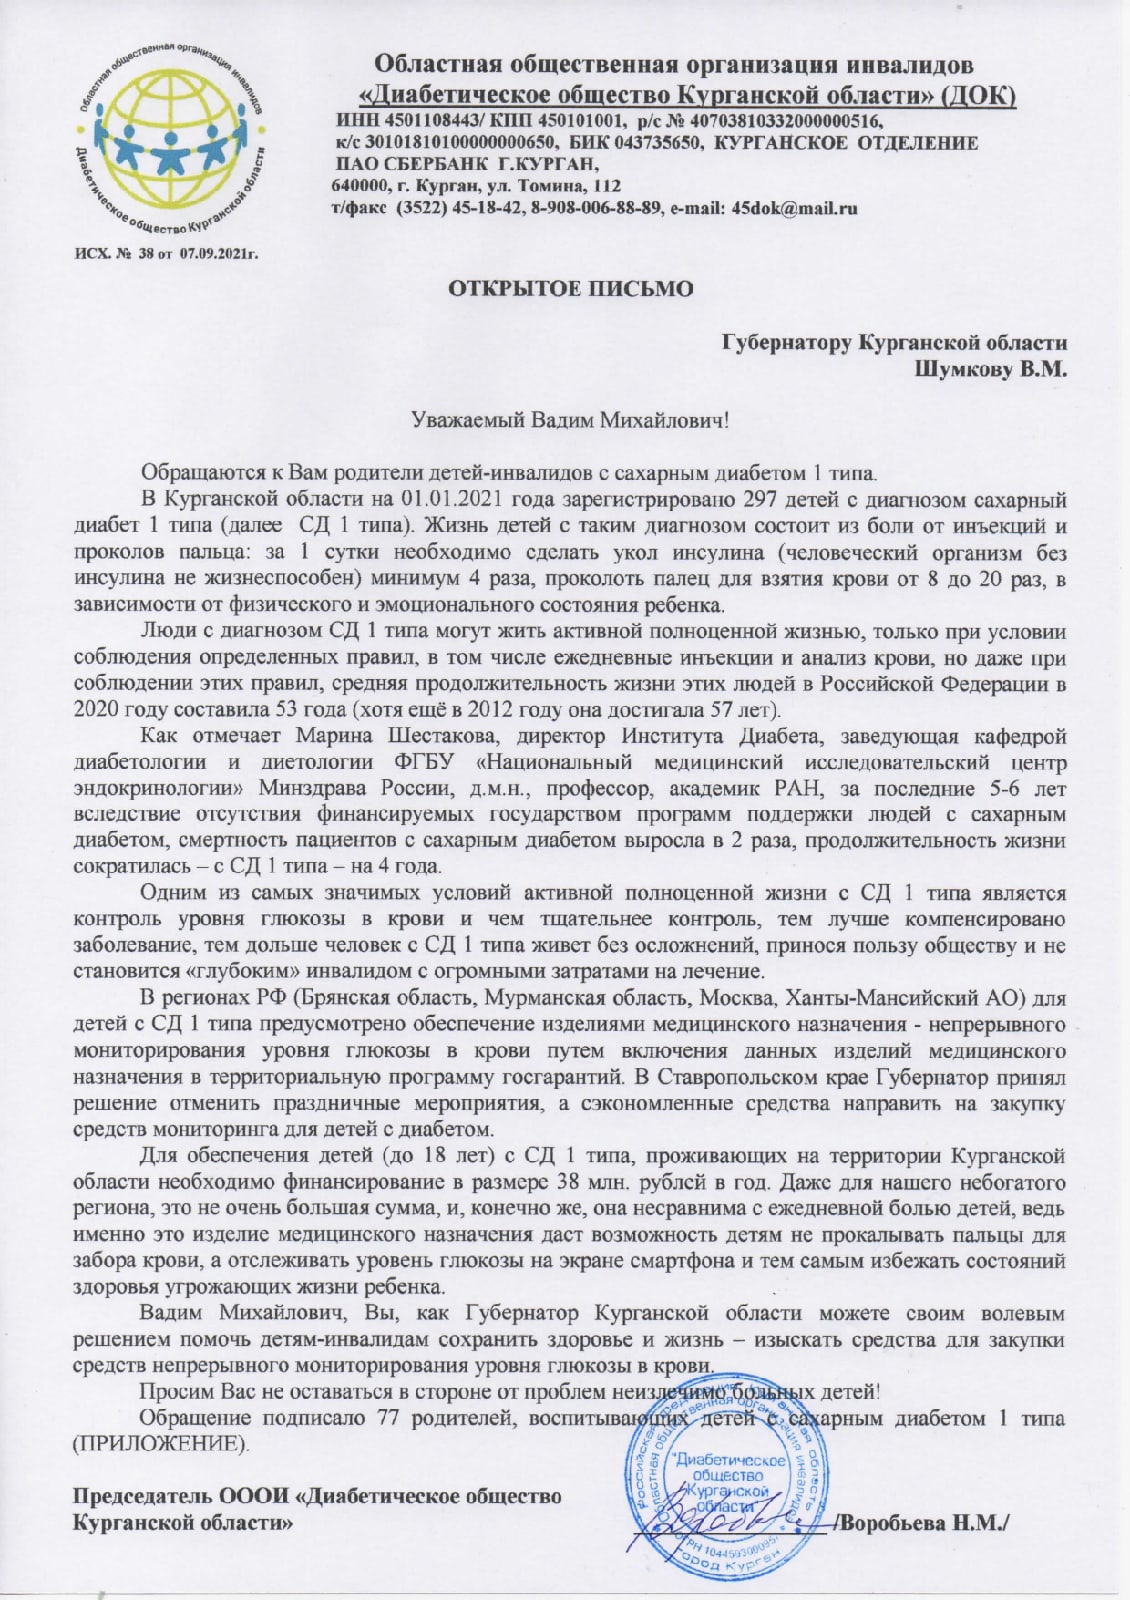 Воробьева говорит, что это уже не первое письмо Шумкову